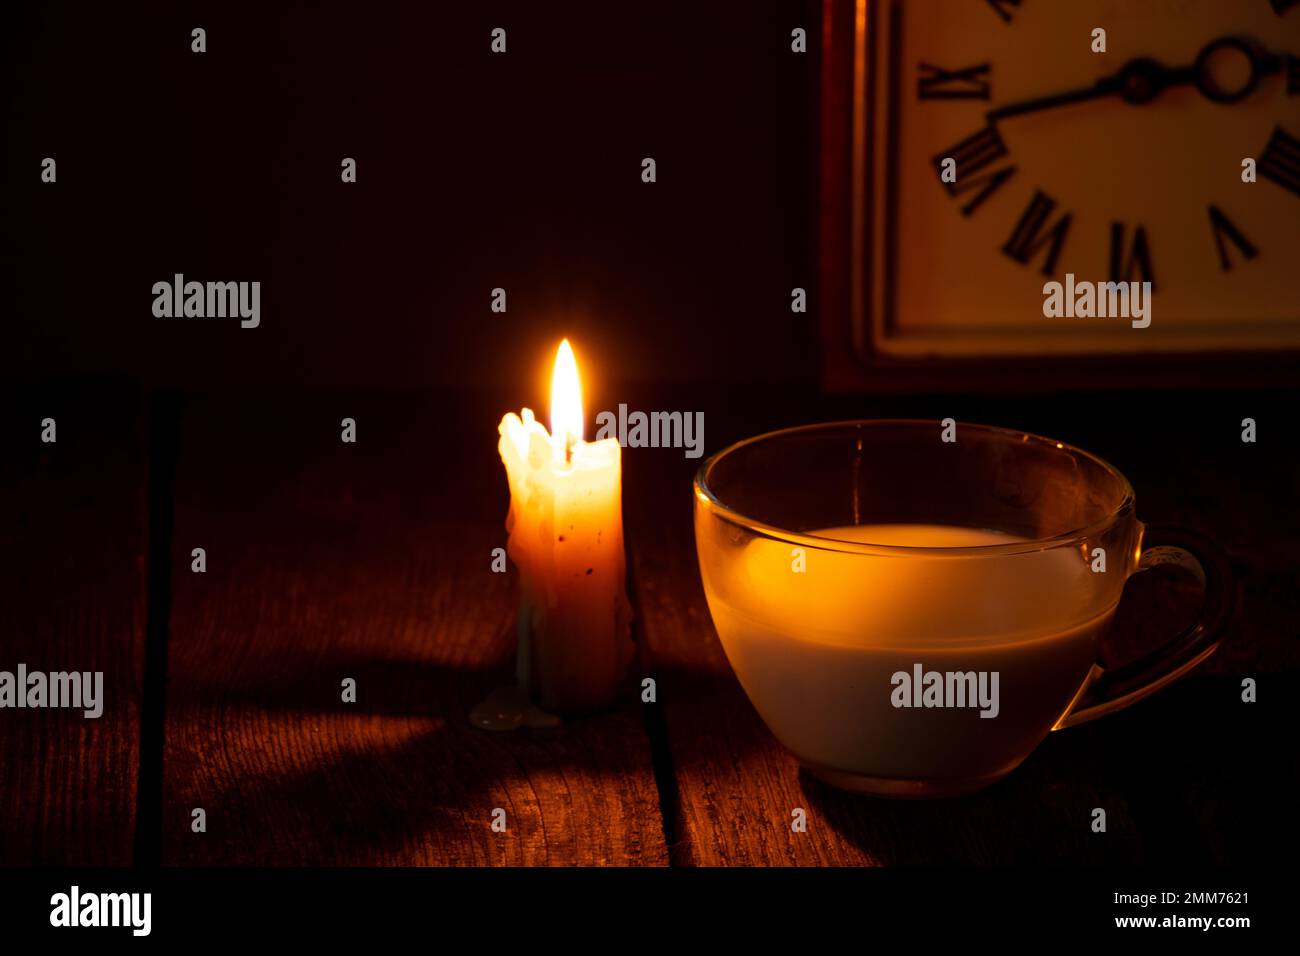 candela fiamma e tazza con latte su un tavolo in una stanza buia Foto Stock